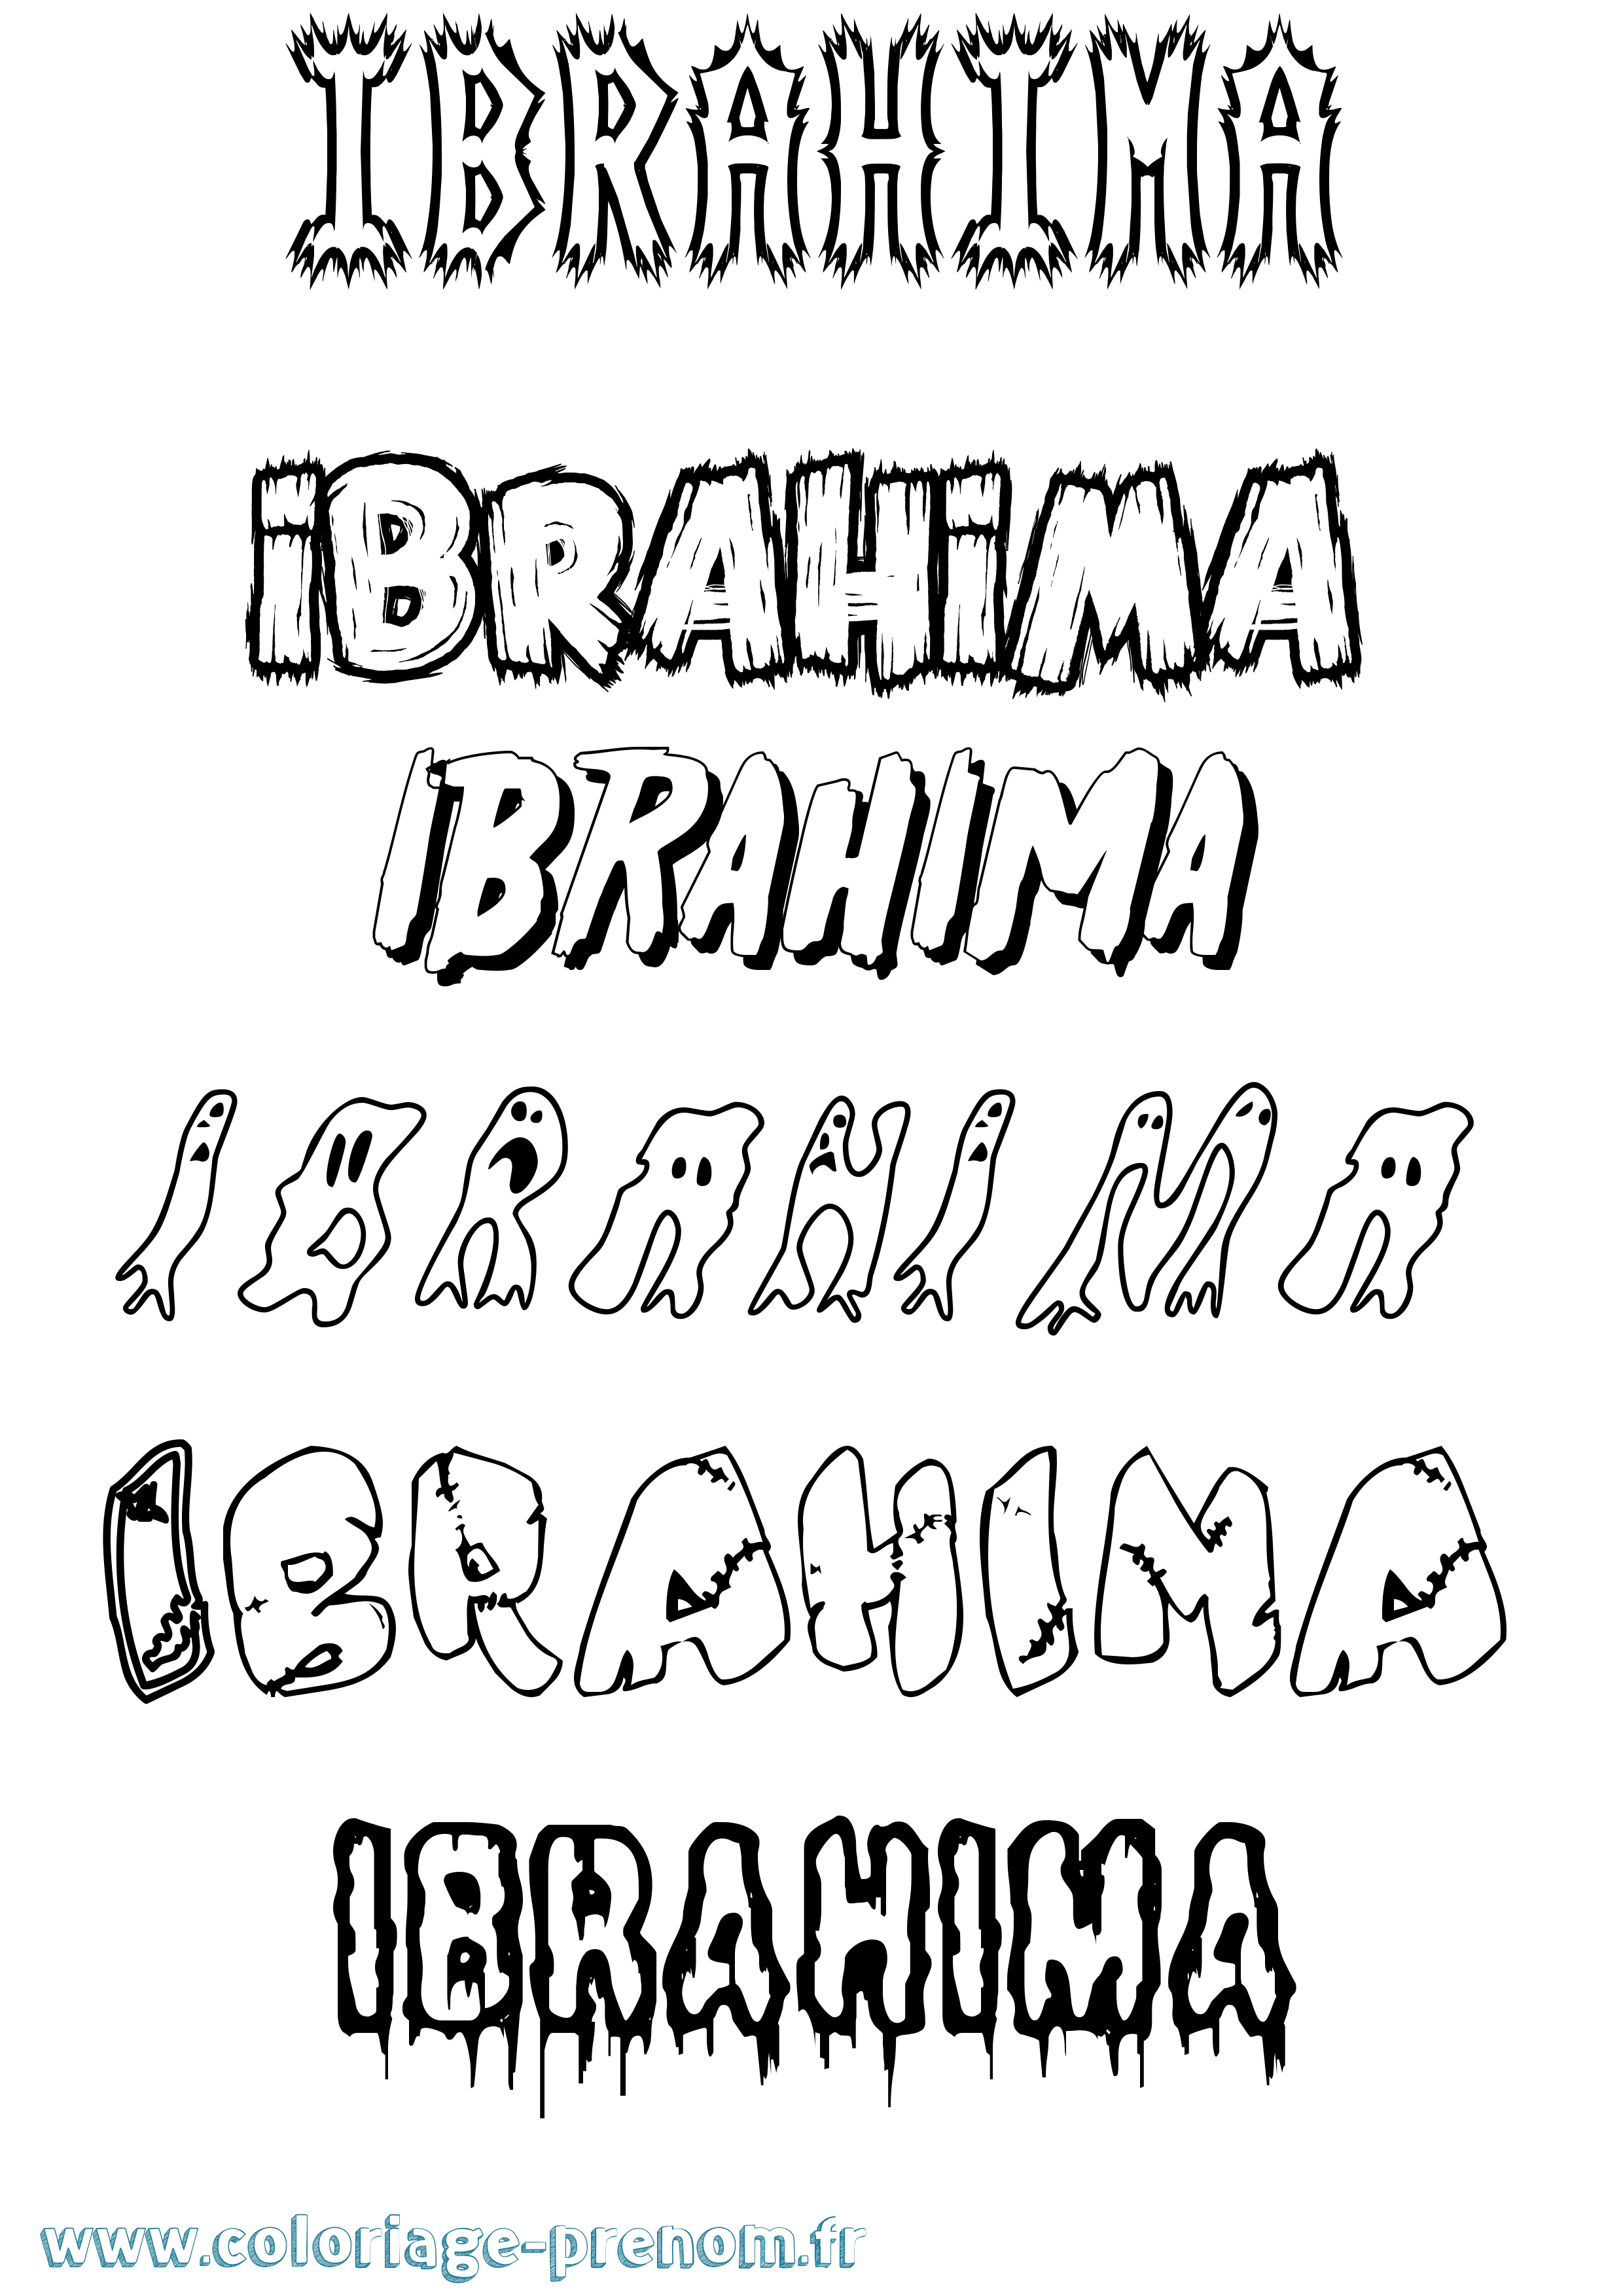 Coloriage prénom Ibrahima